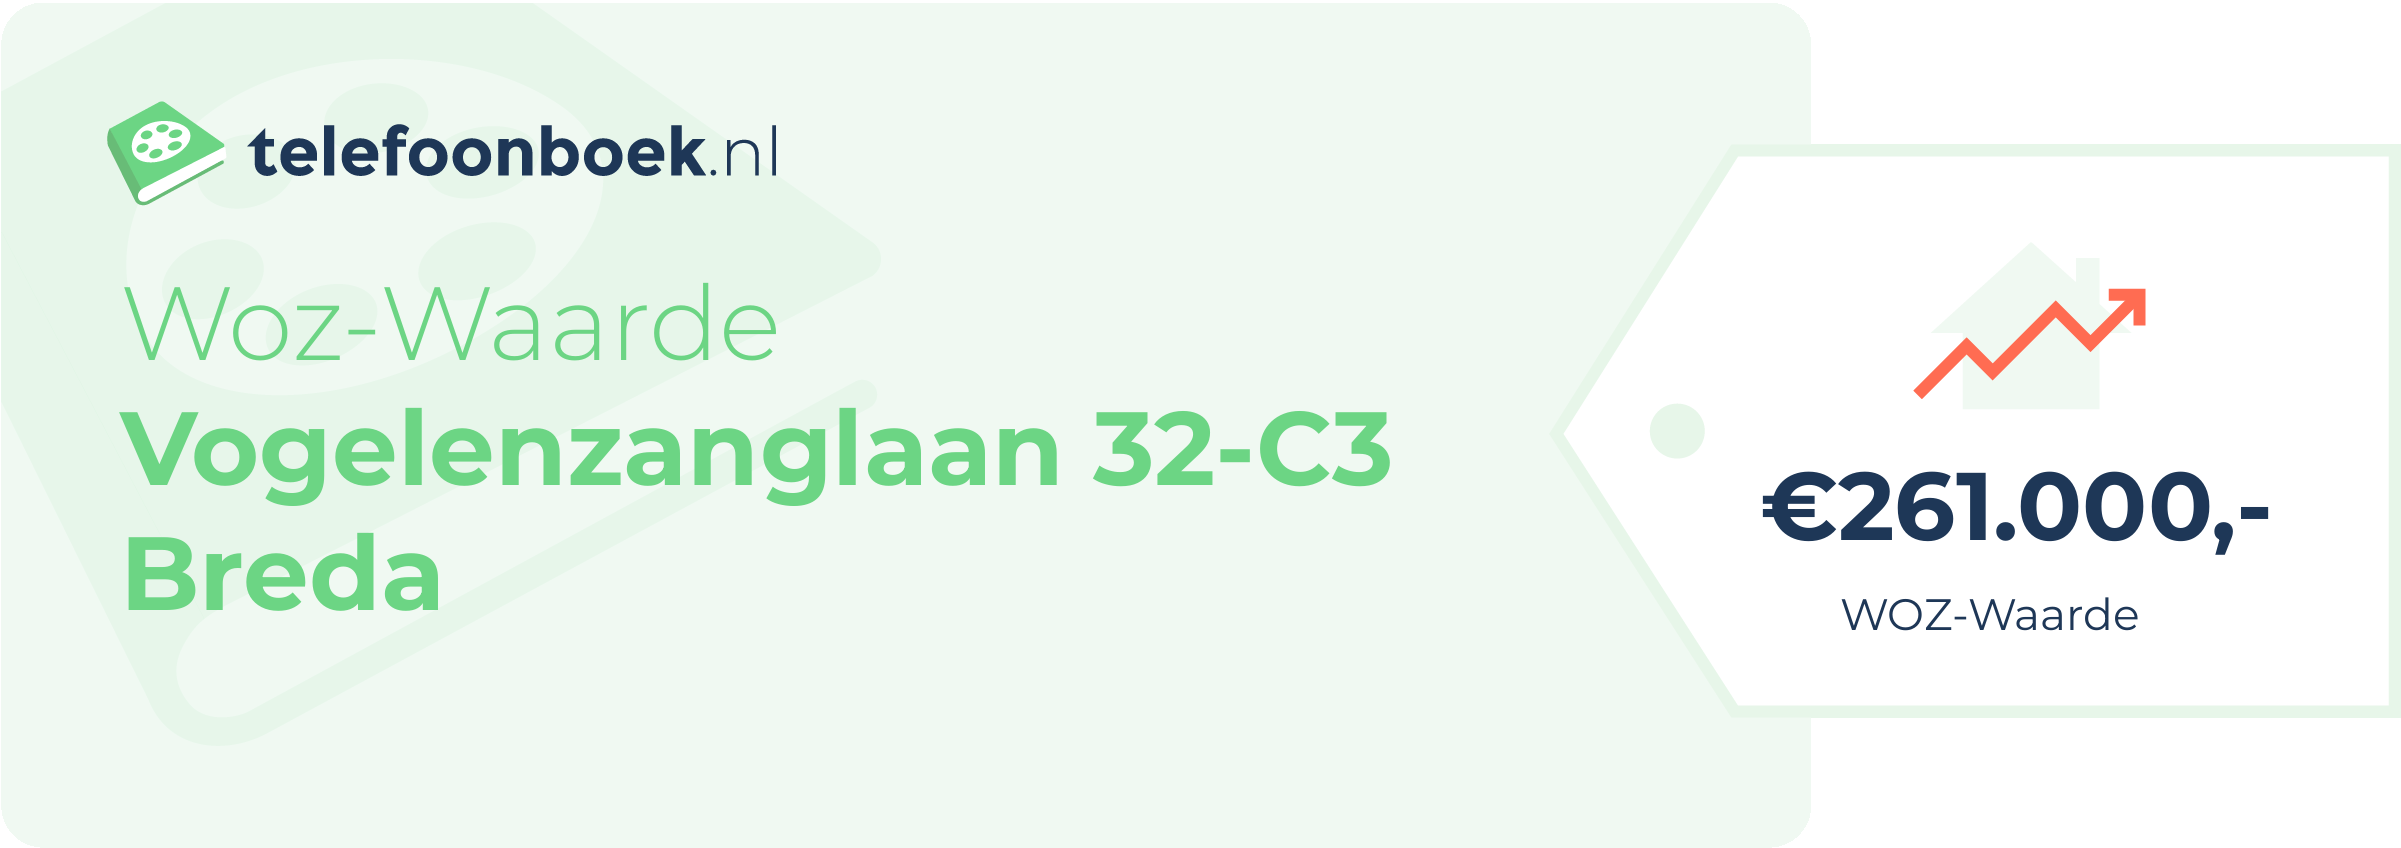 WOZ-waarde Vogelenzanglaan 32-C3 Breda